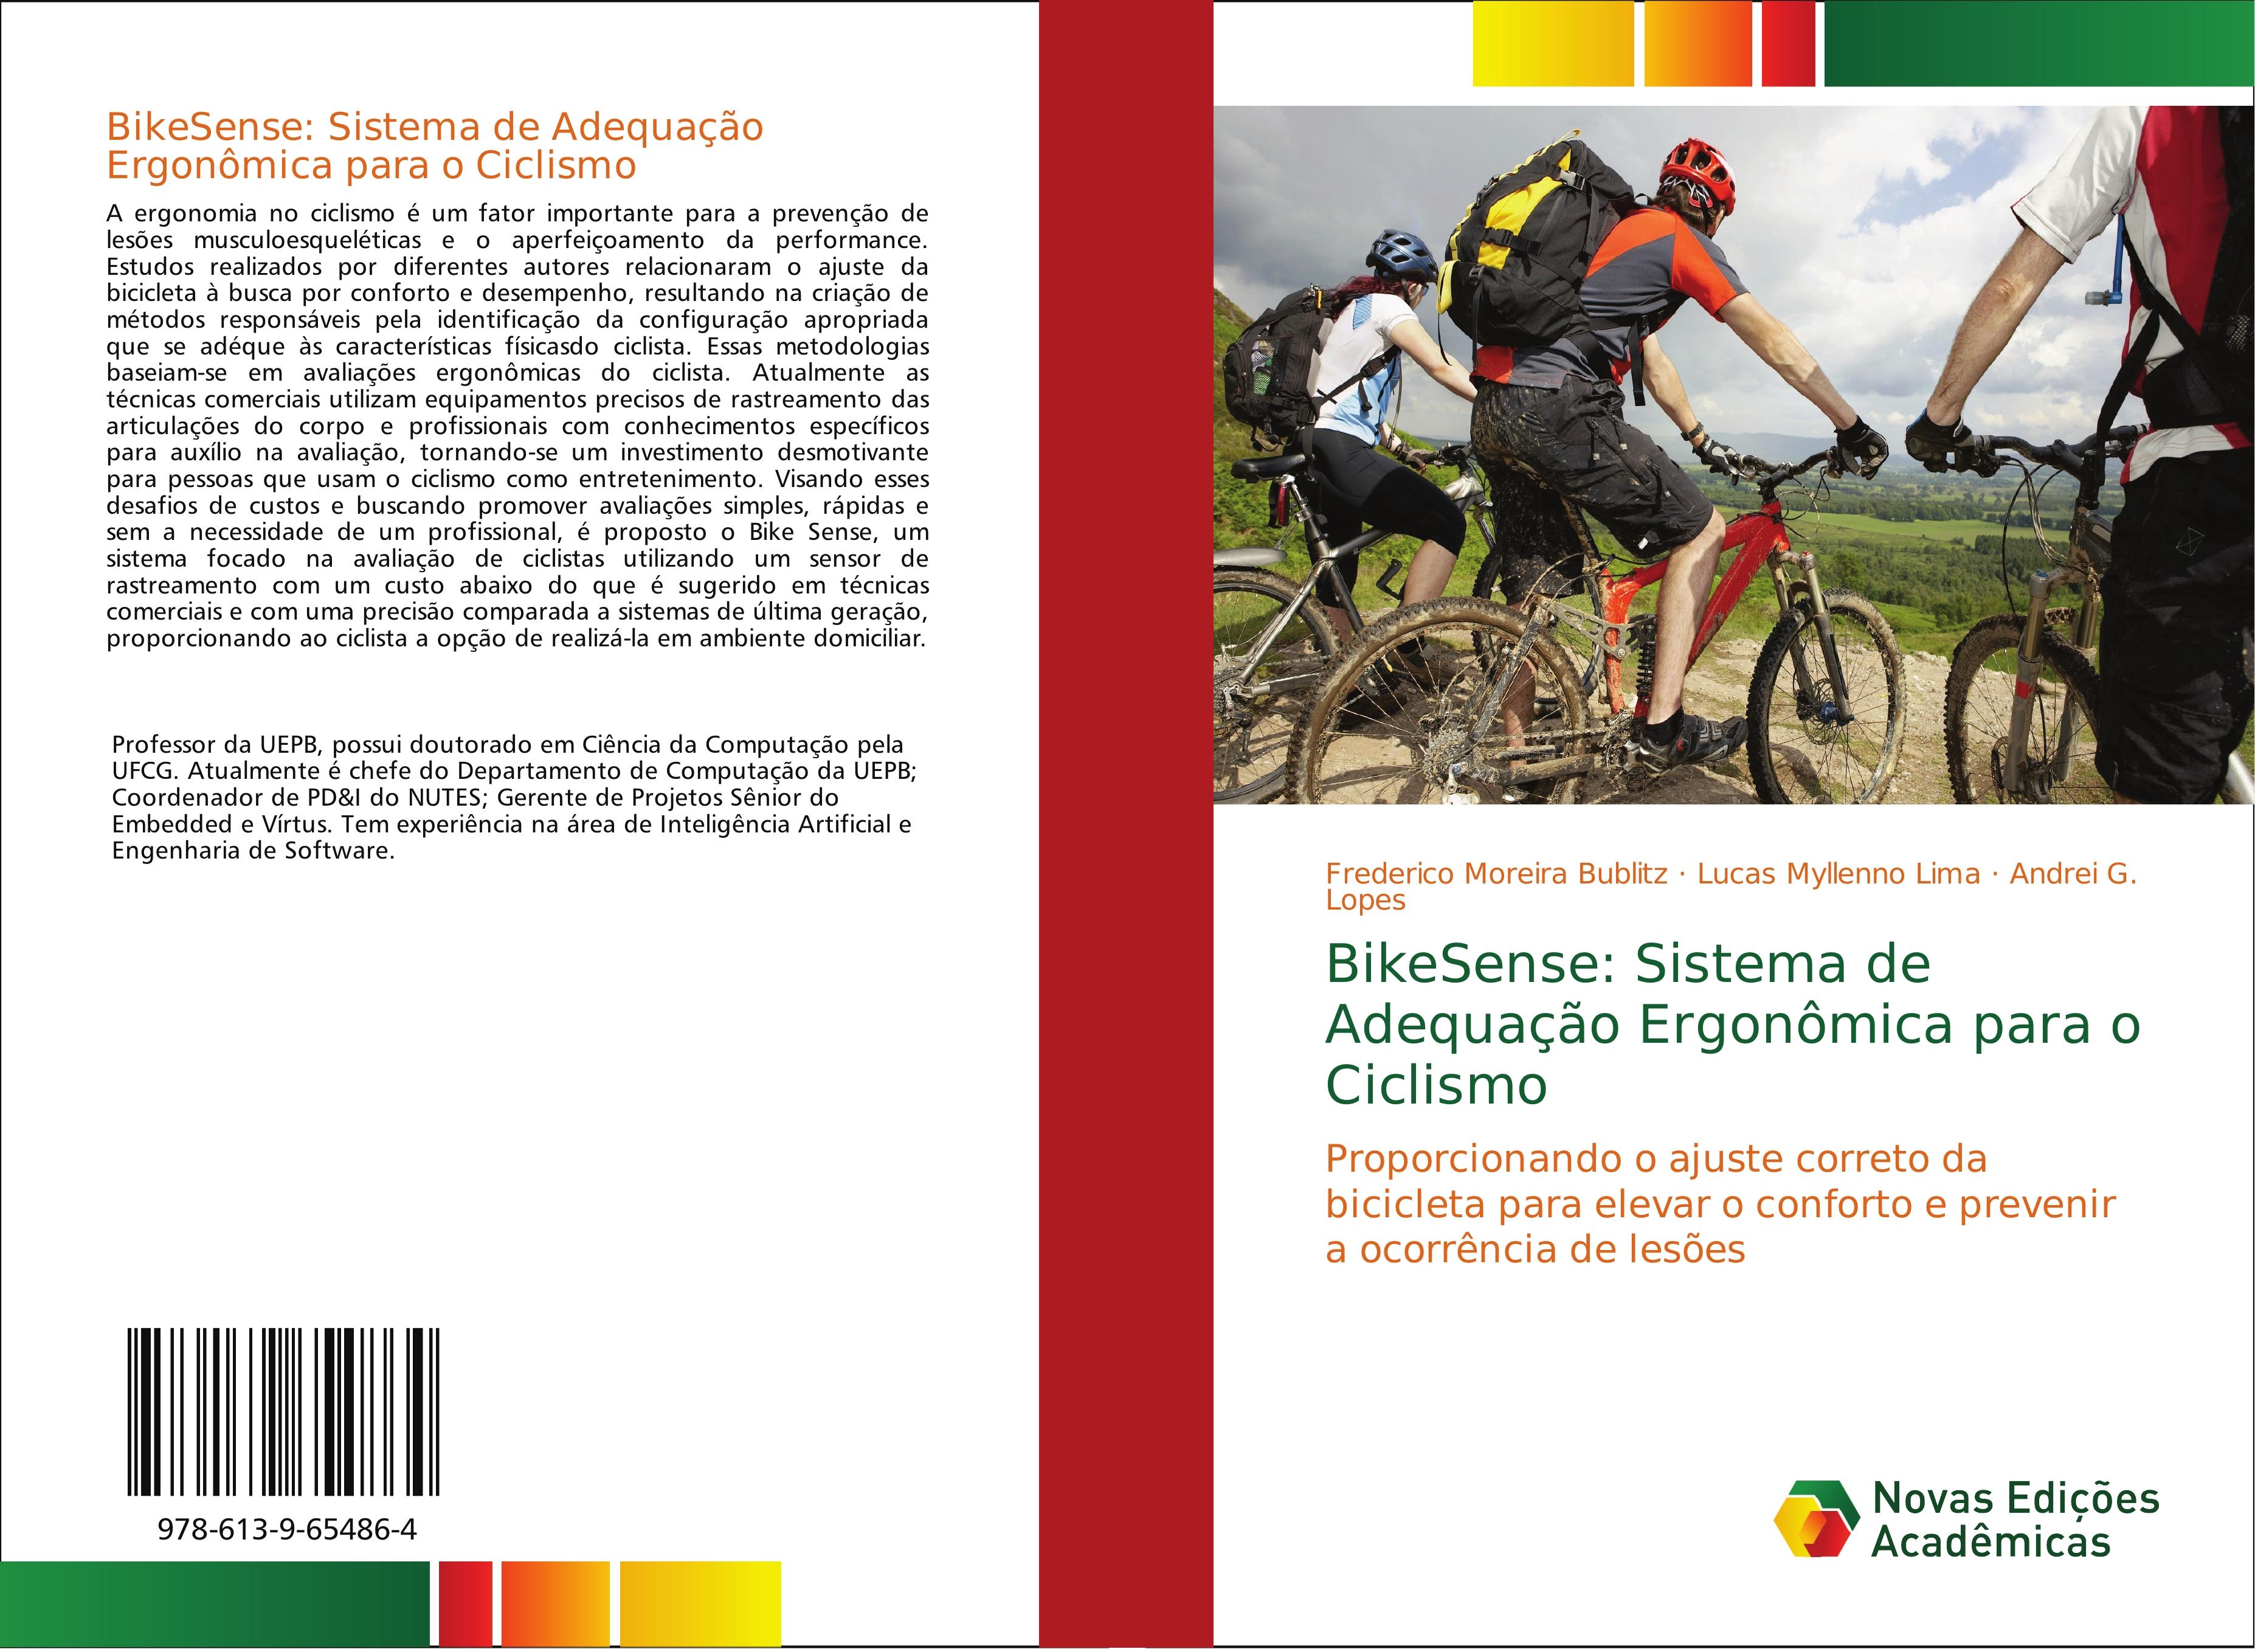 BikeSense: Sistema de Adequação Ergonômica para o Ciclismo - Frederico Moreira Bublitz Lucas Myllenno Lima Andrei G. Lopes